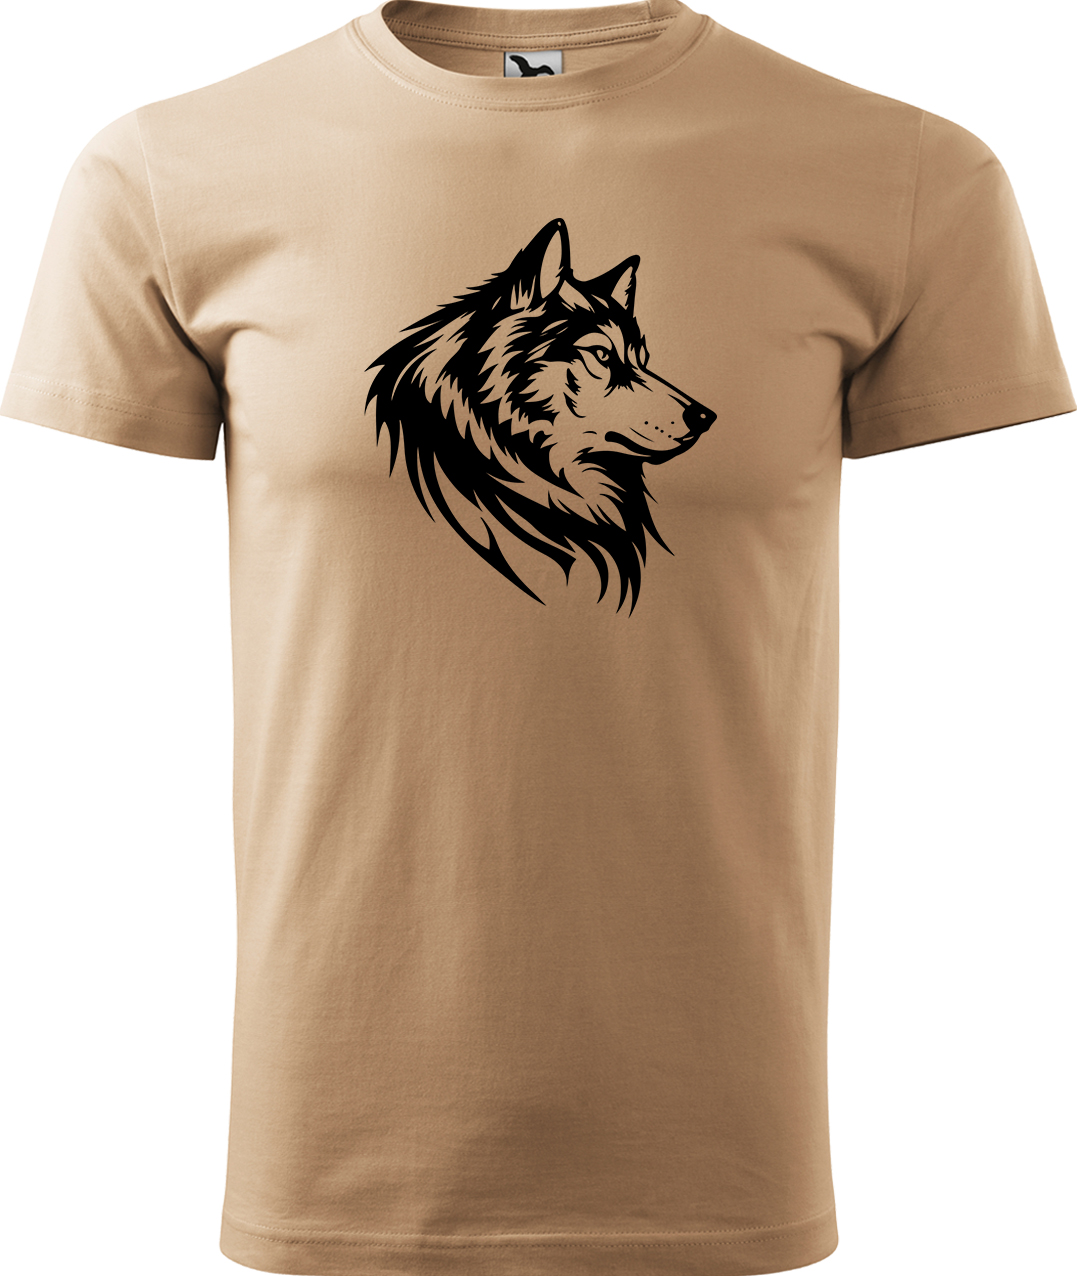 Pánské tričko s vlkem - Wolf Velikost: XL, Barva: Písková (08), Střih: pánský